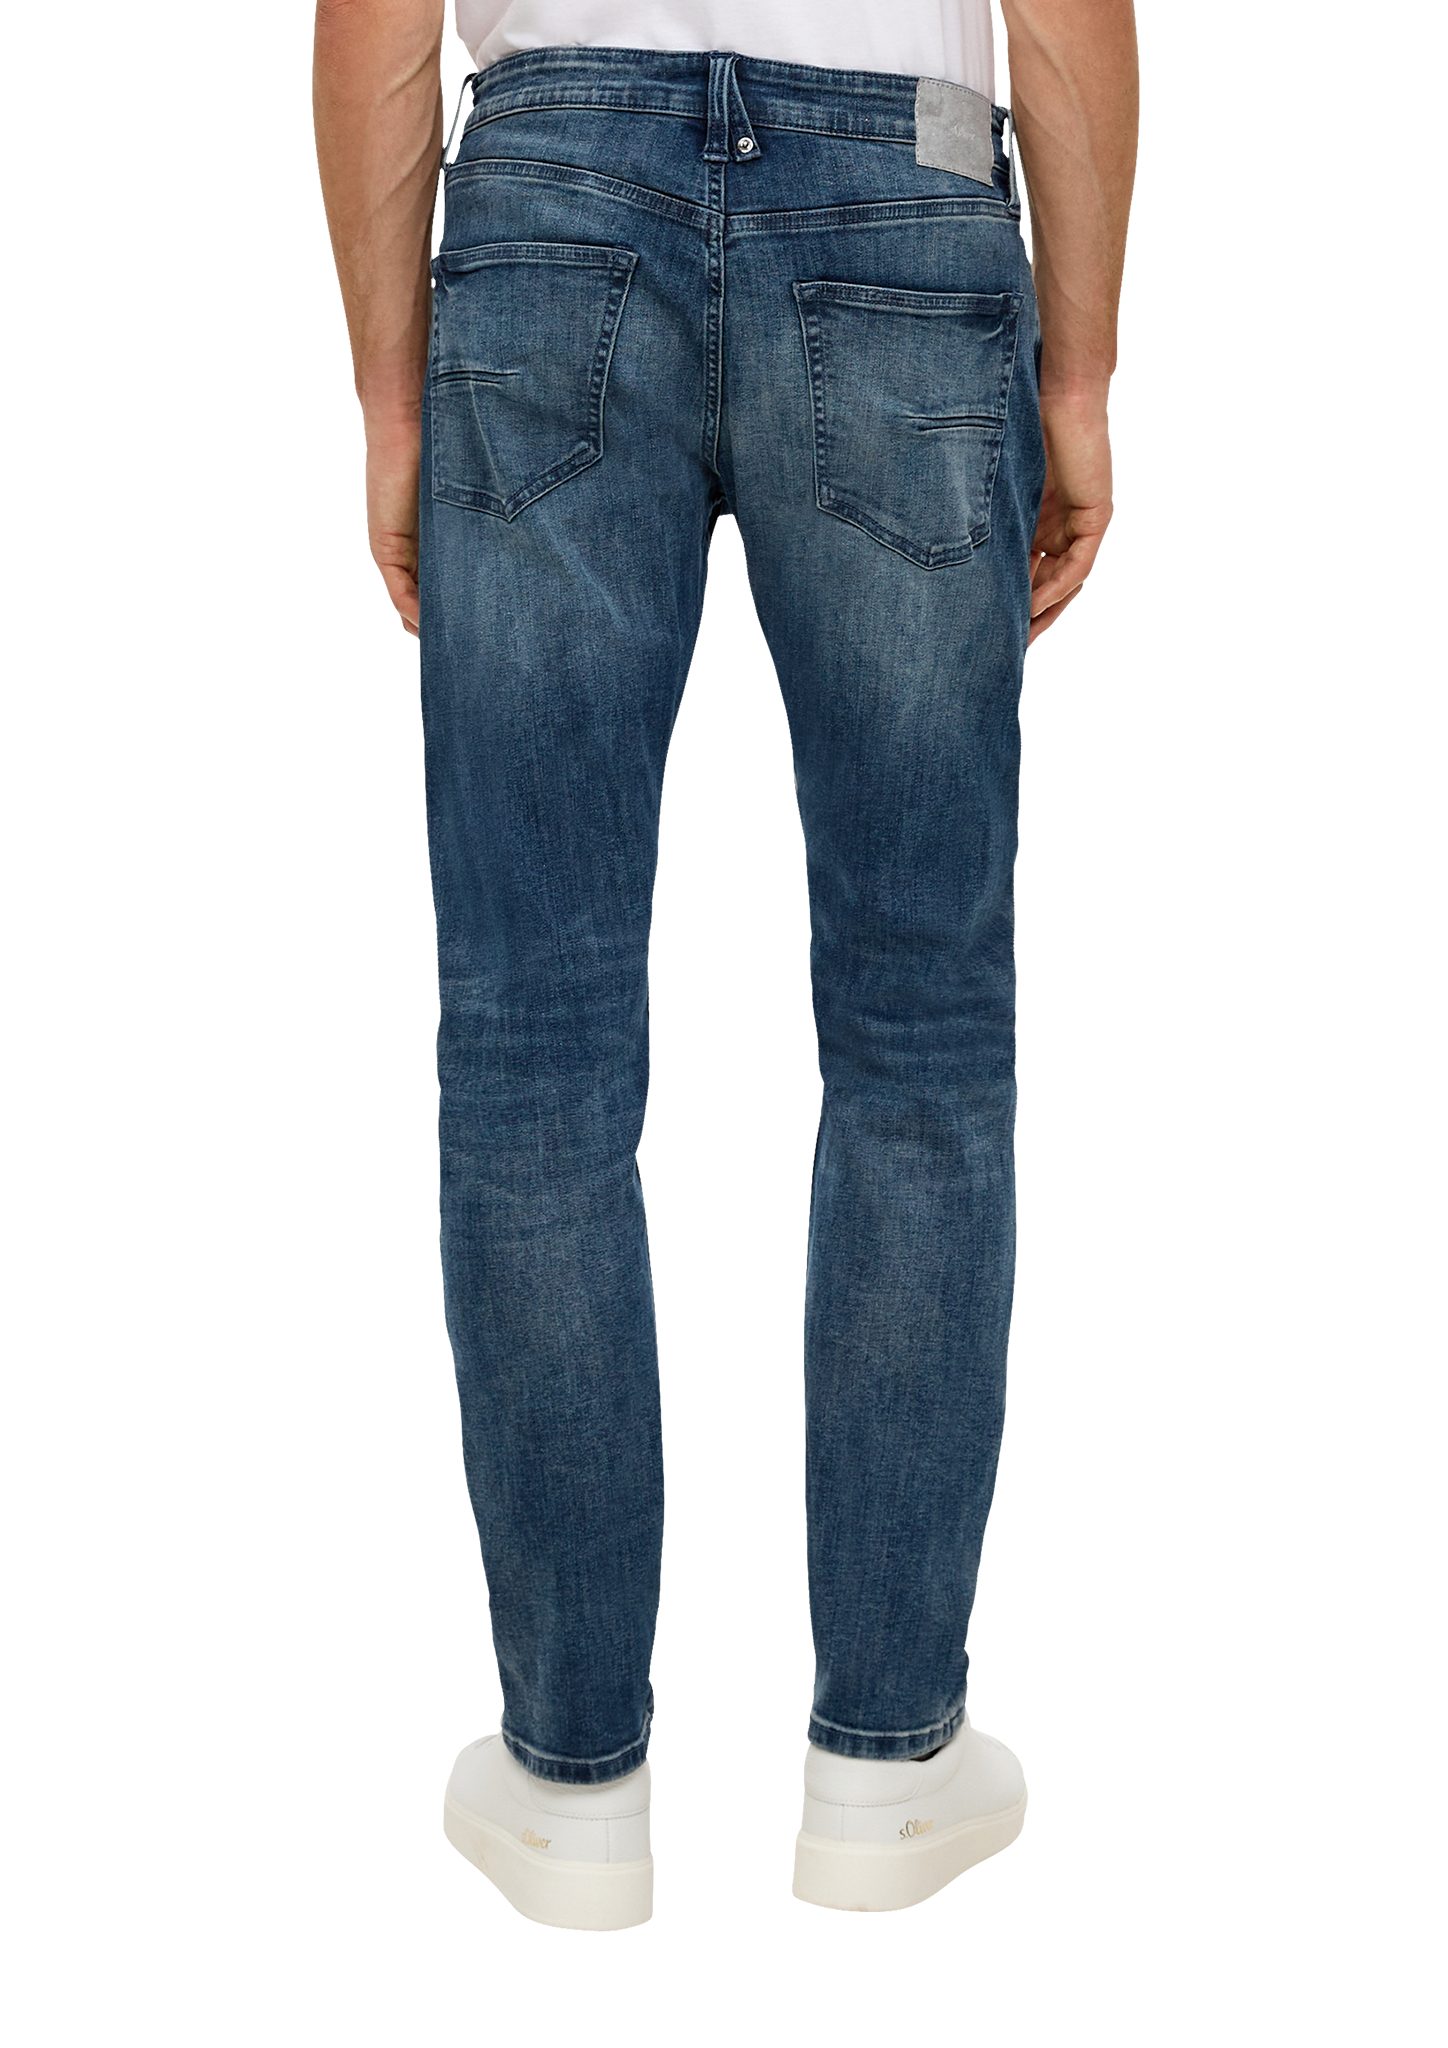 Jeans / Stoffhose Rise dunkelblau Tapered Leg Mid 5-Pocket-Stil Regular / / Waschung Fit Leder-Patch, / s.Oliver